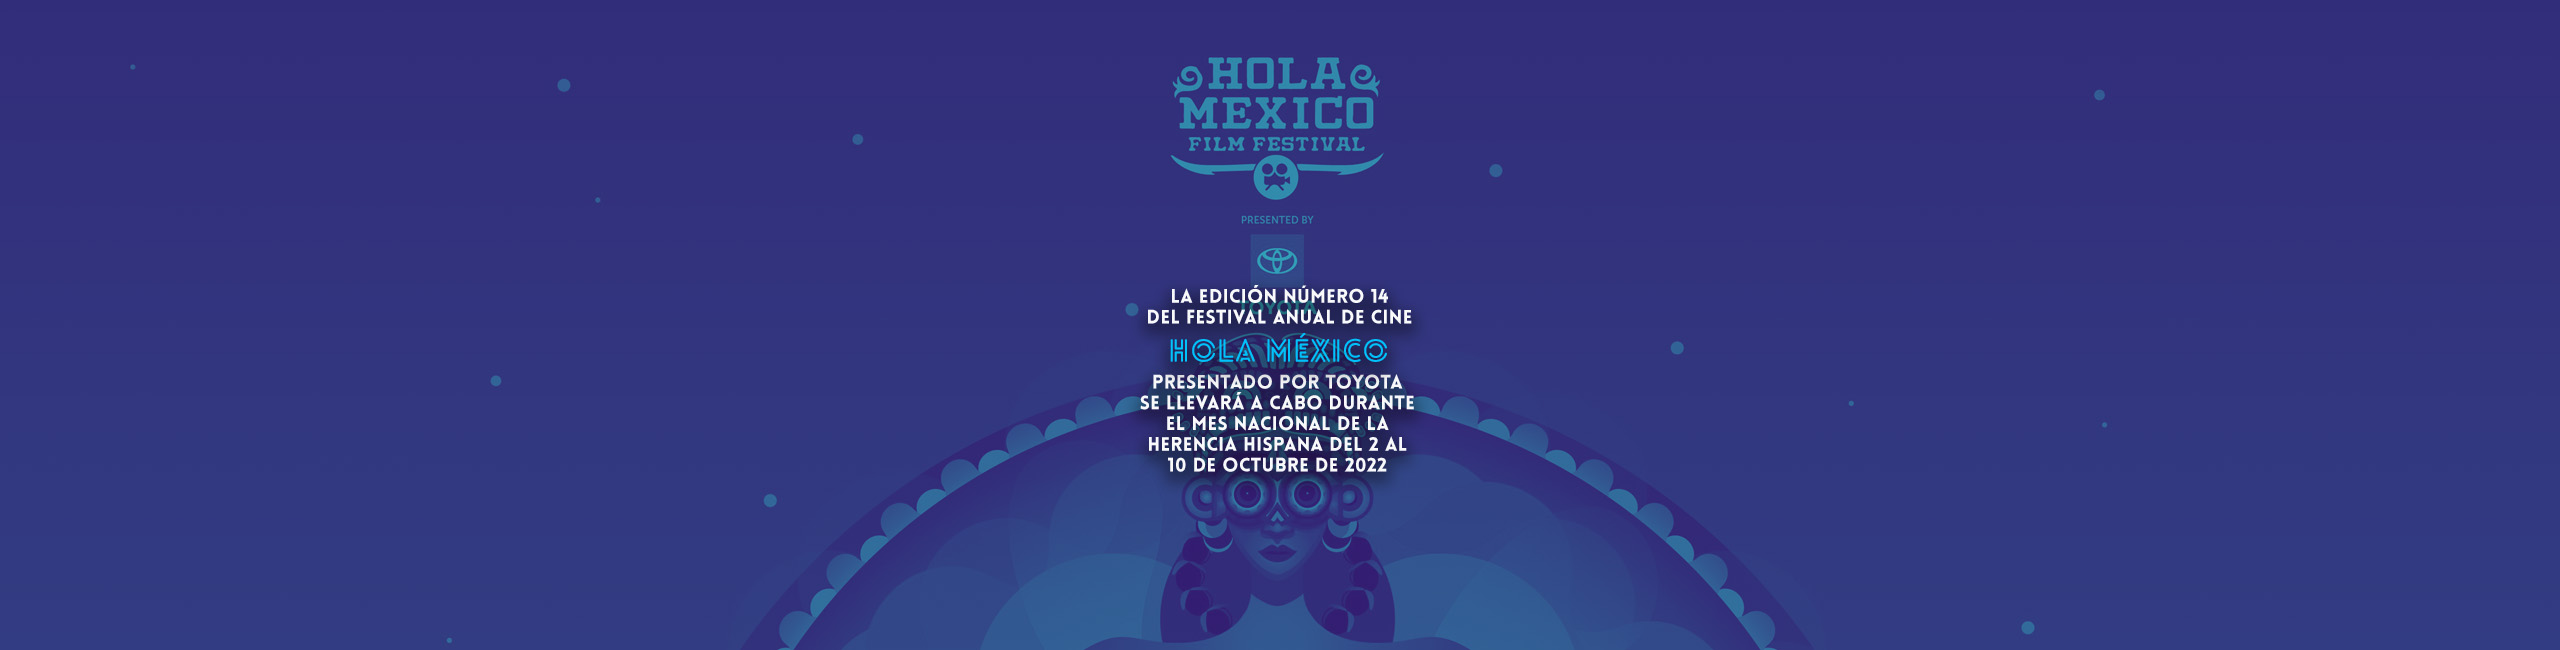 La edición número 14 del festival anual de cine Hola México presentado por Toyota se llevará a cabo durante el mes nacional de la herencia hispana del 2 al 10 de octubre de 2022